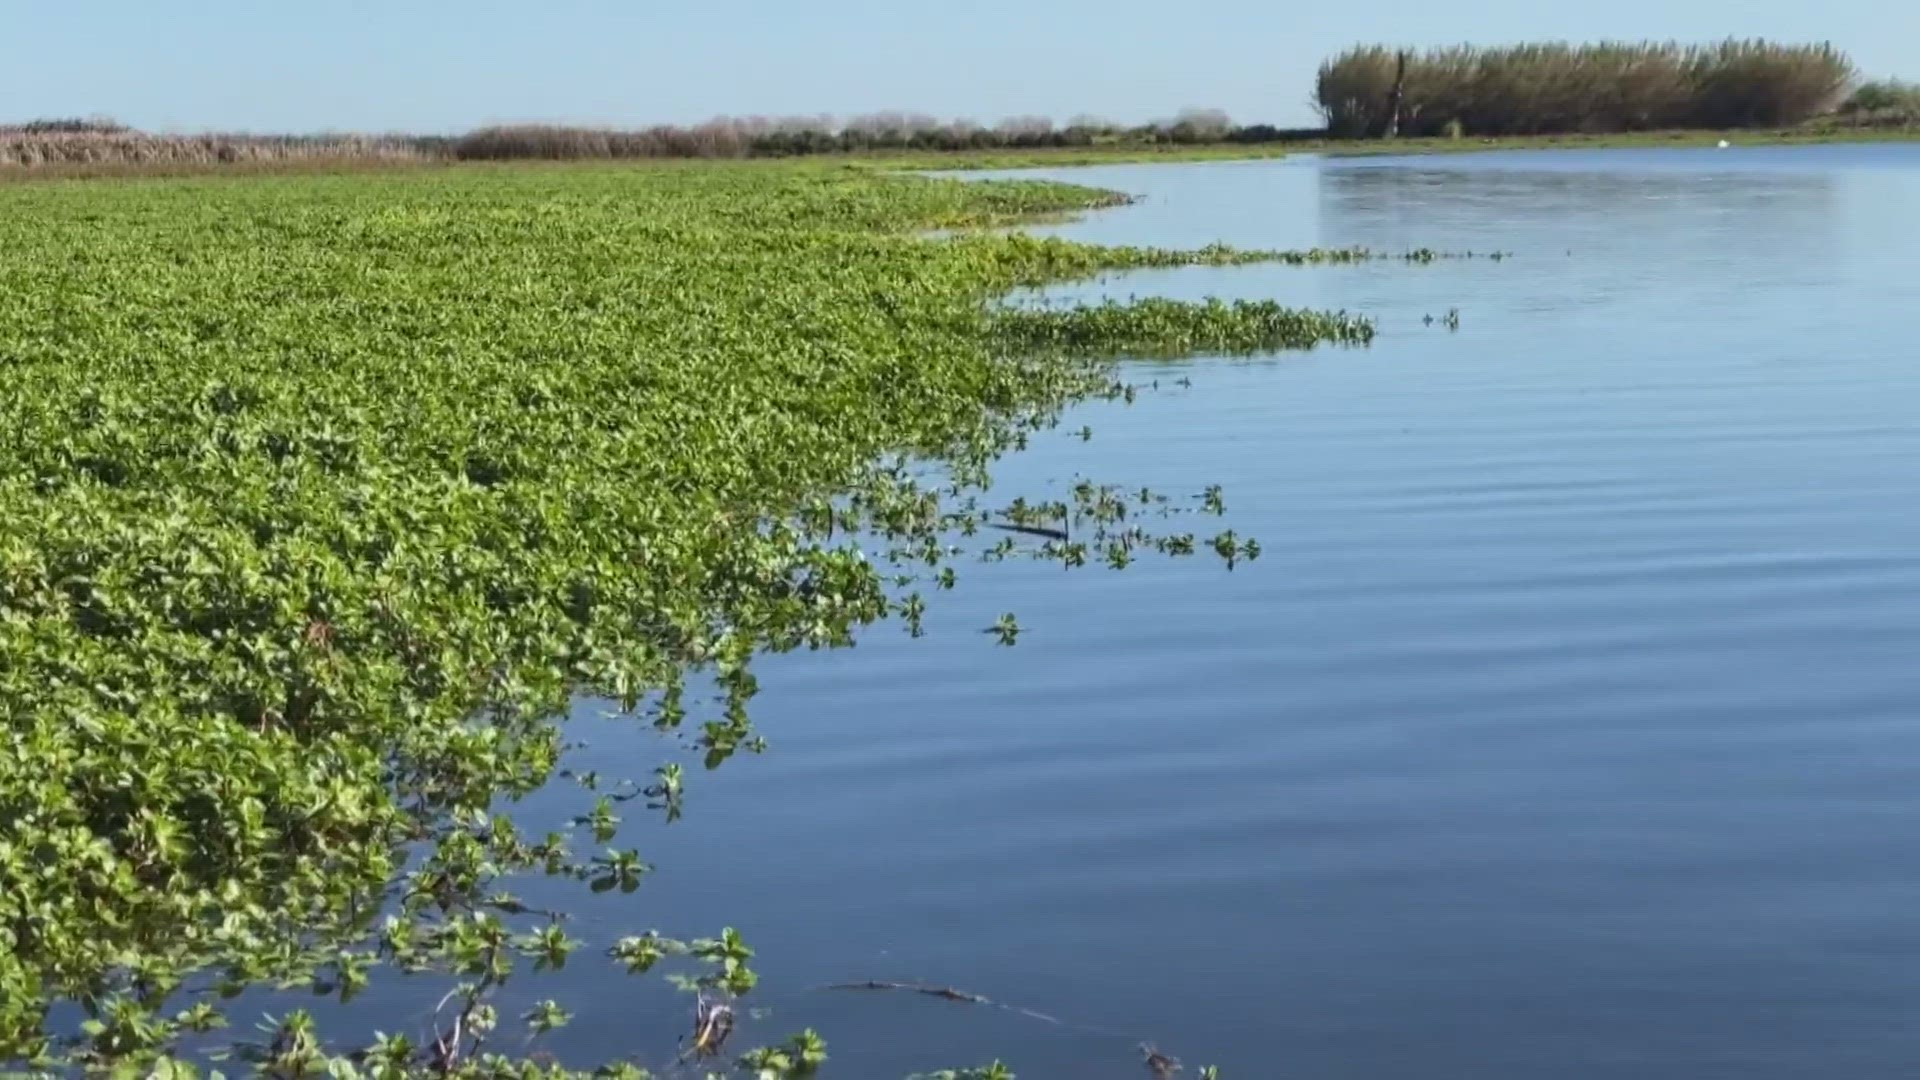 Crews treat invasive aquatic plants in the Sacramento-San Joaquin Delta